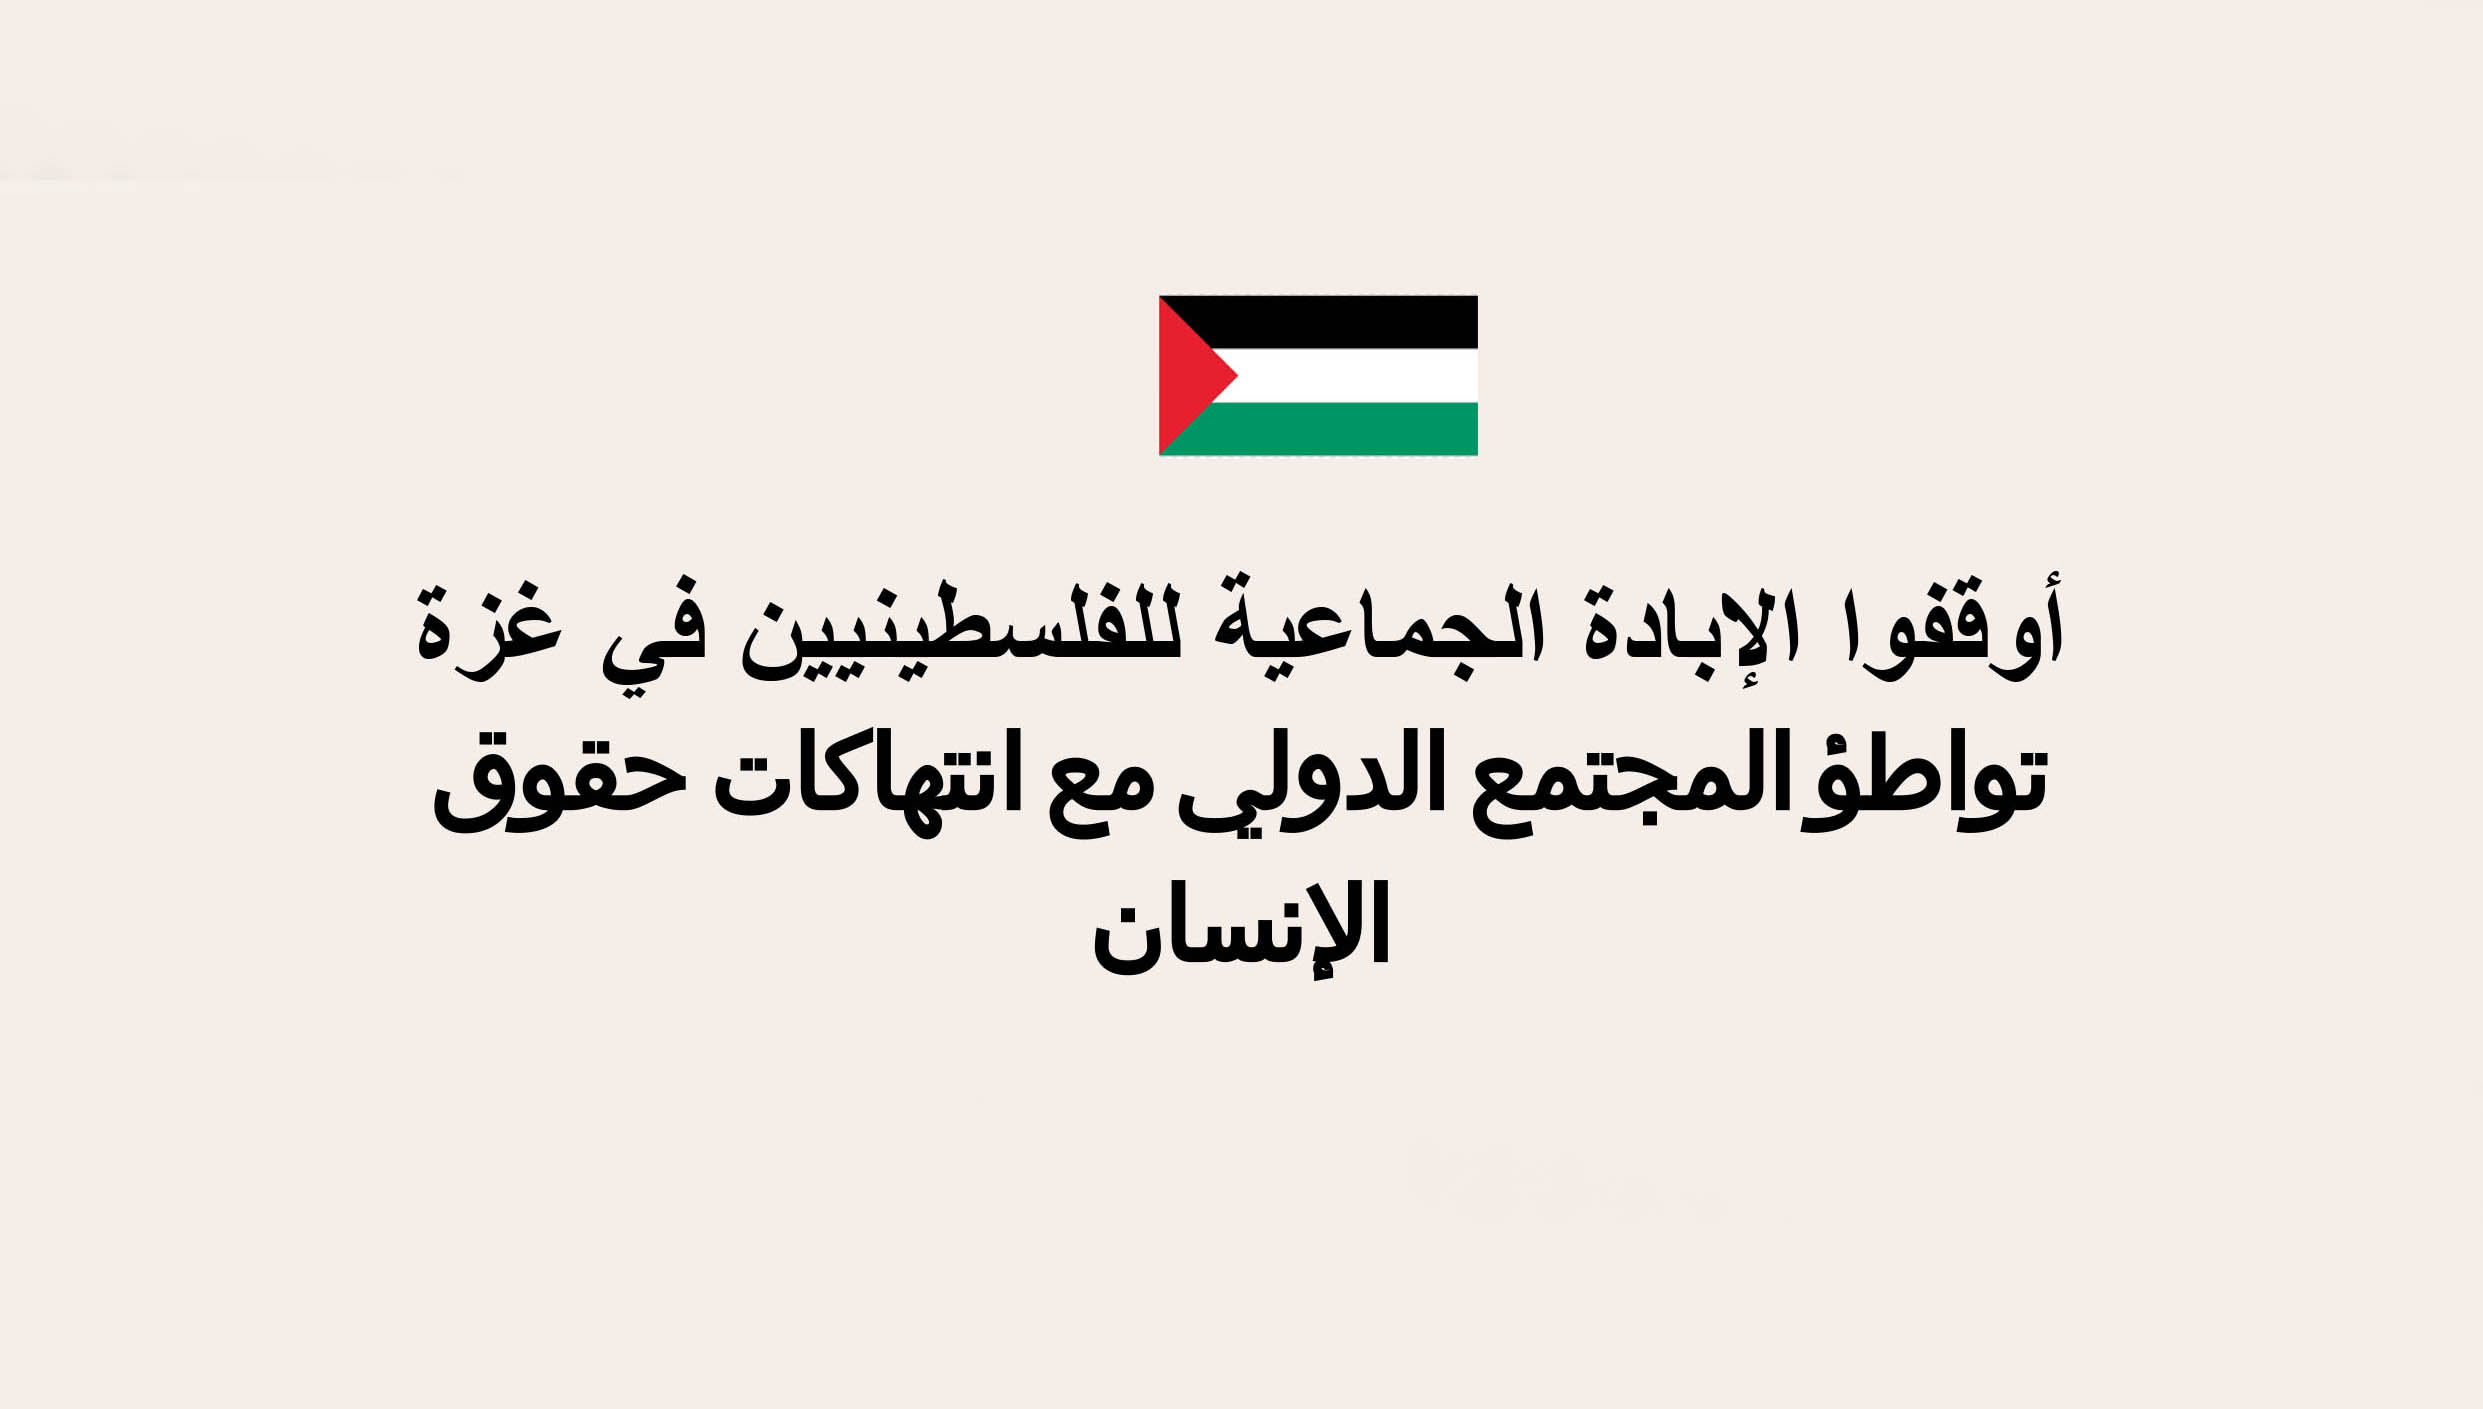 البيان الرسمي لجمعيتي بشأن الوضع في غزة: أوقفوا الإبادة الجماعية للفلسطينيين في غزة, تواطؤ المجتمع الدولي مع انتهاكات حقوق الإنسان